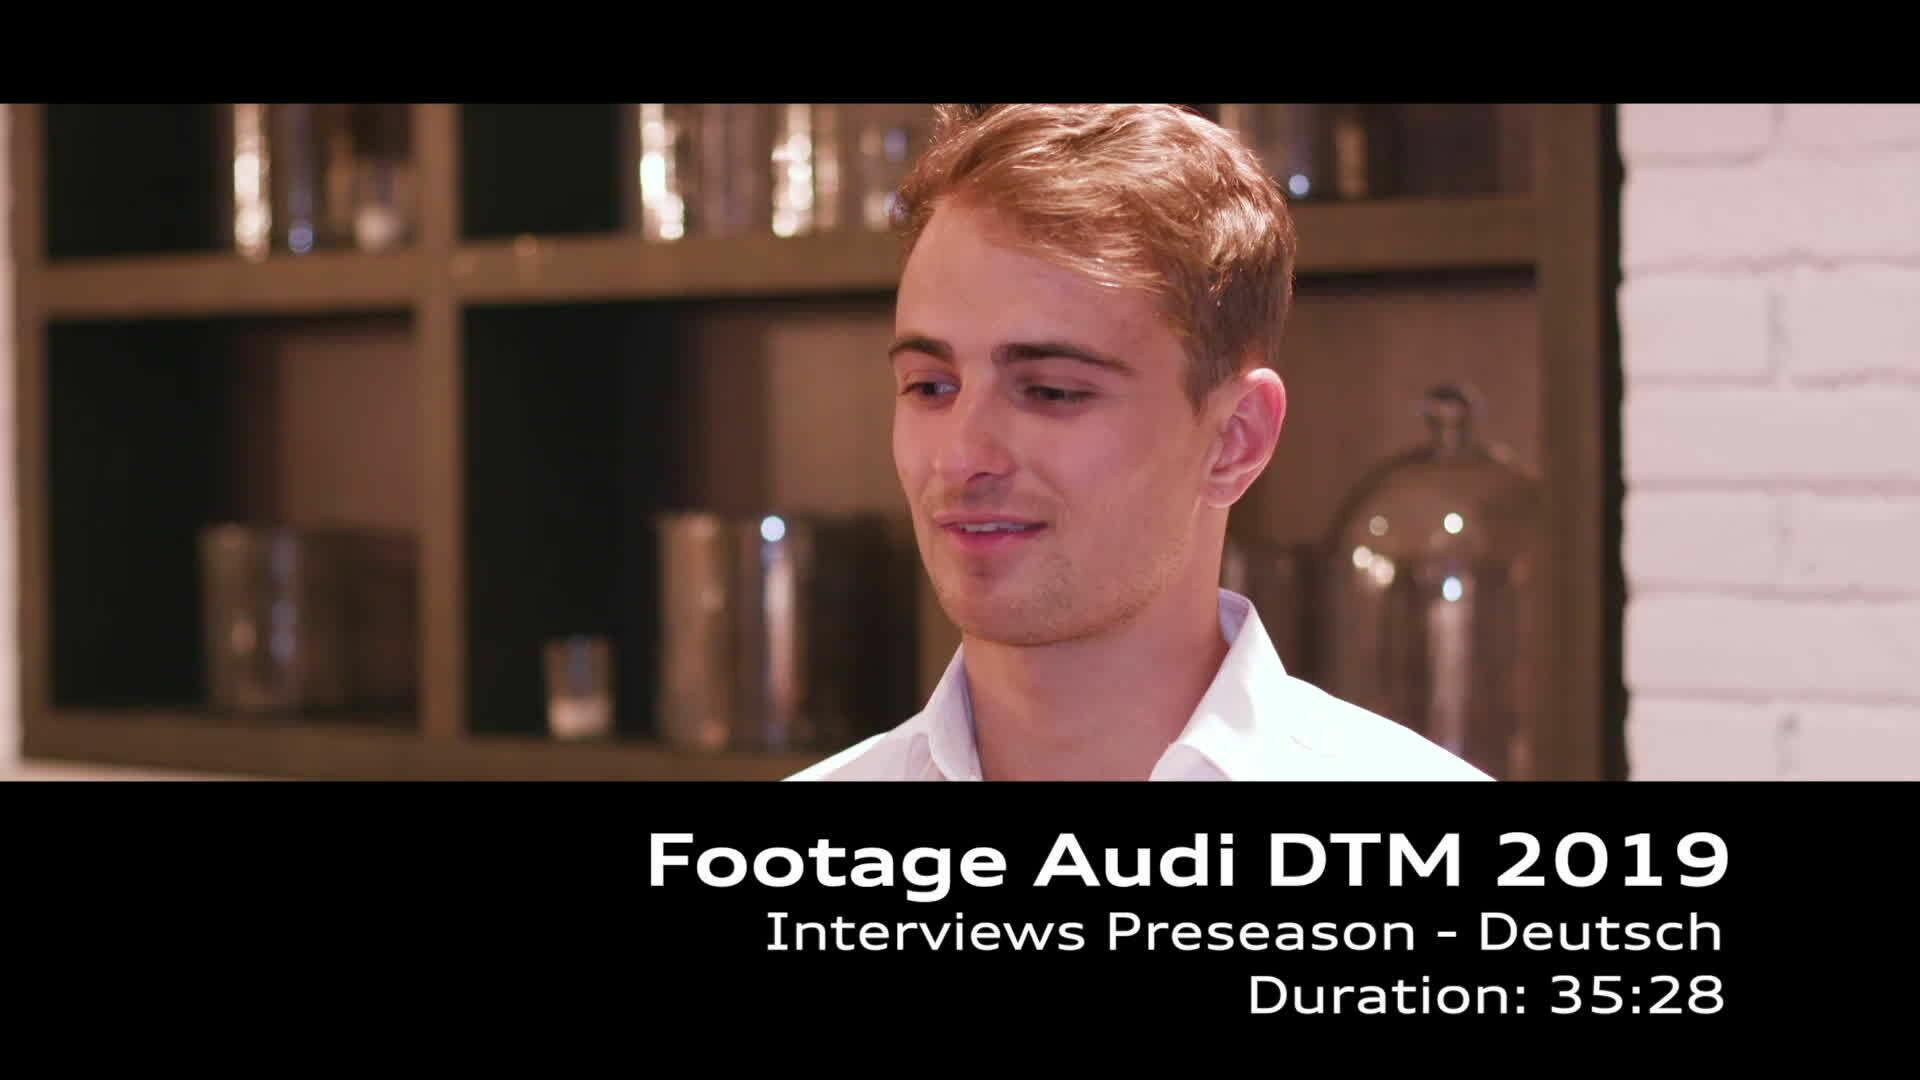 Footage Audi DTM 2019 Interviews